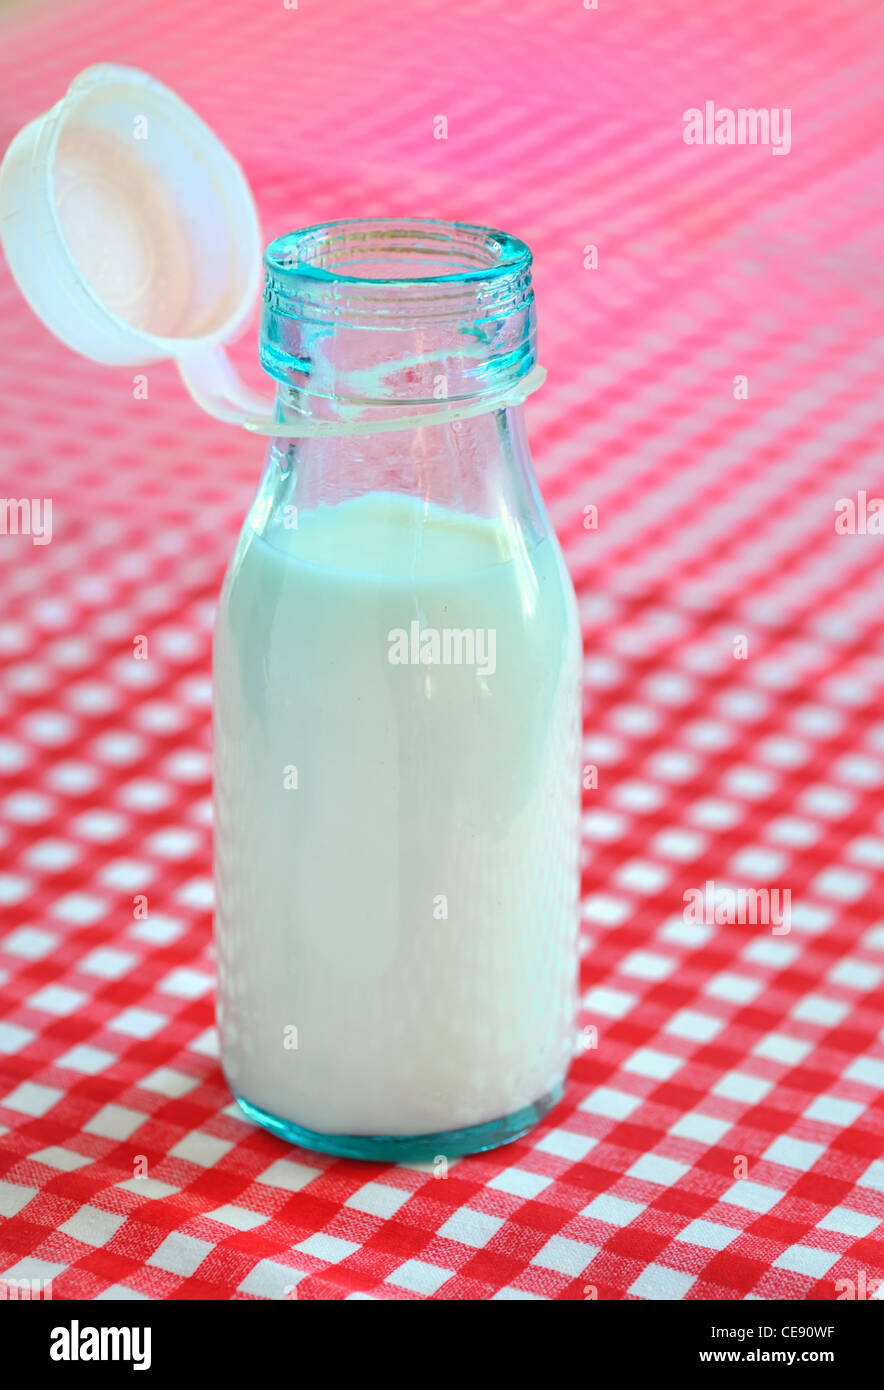 bottle of milk on table Stock Photo